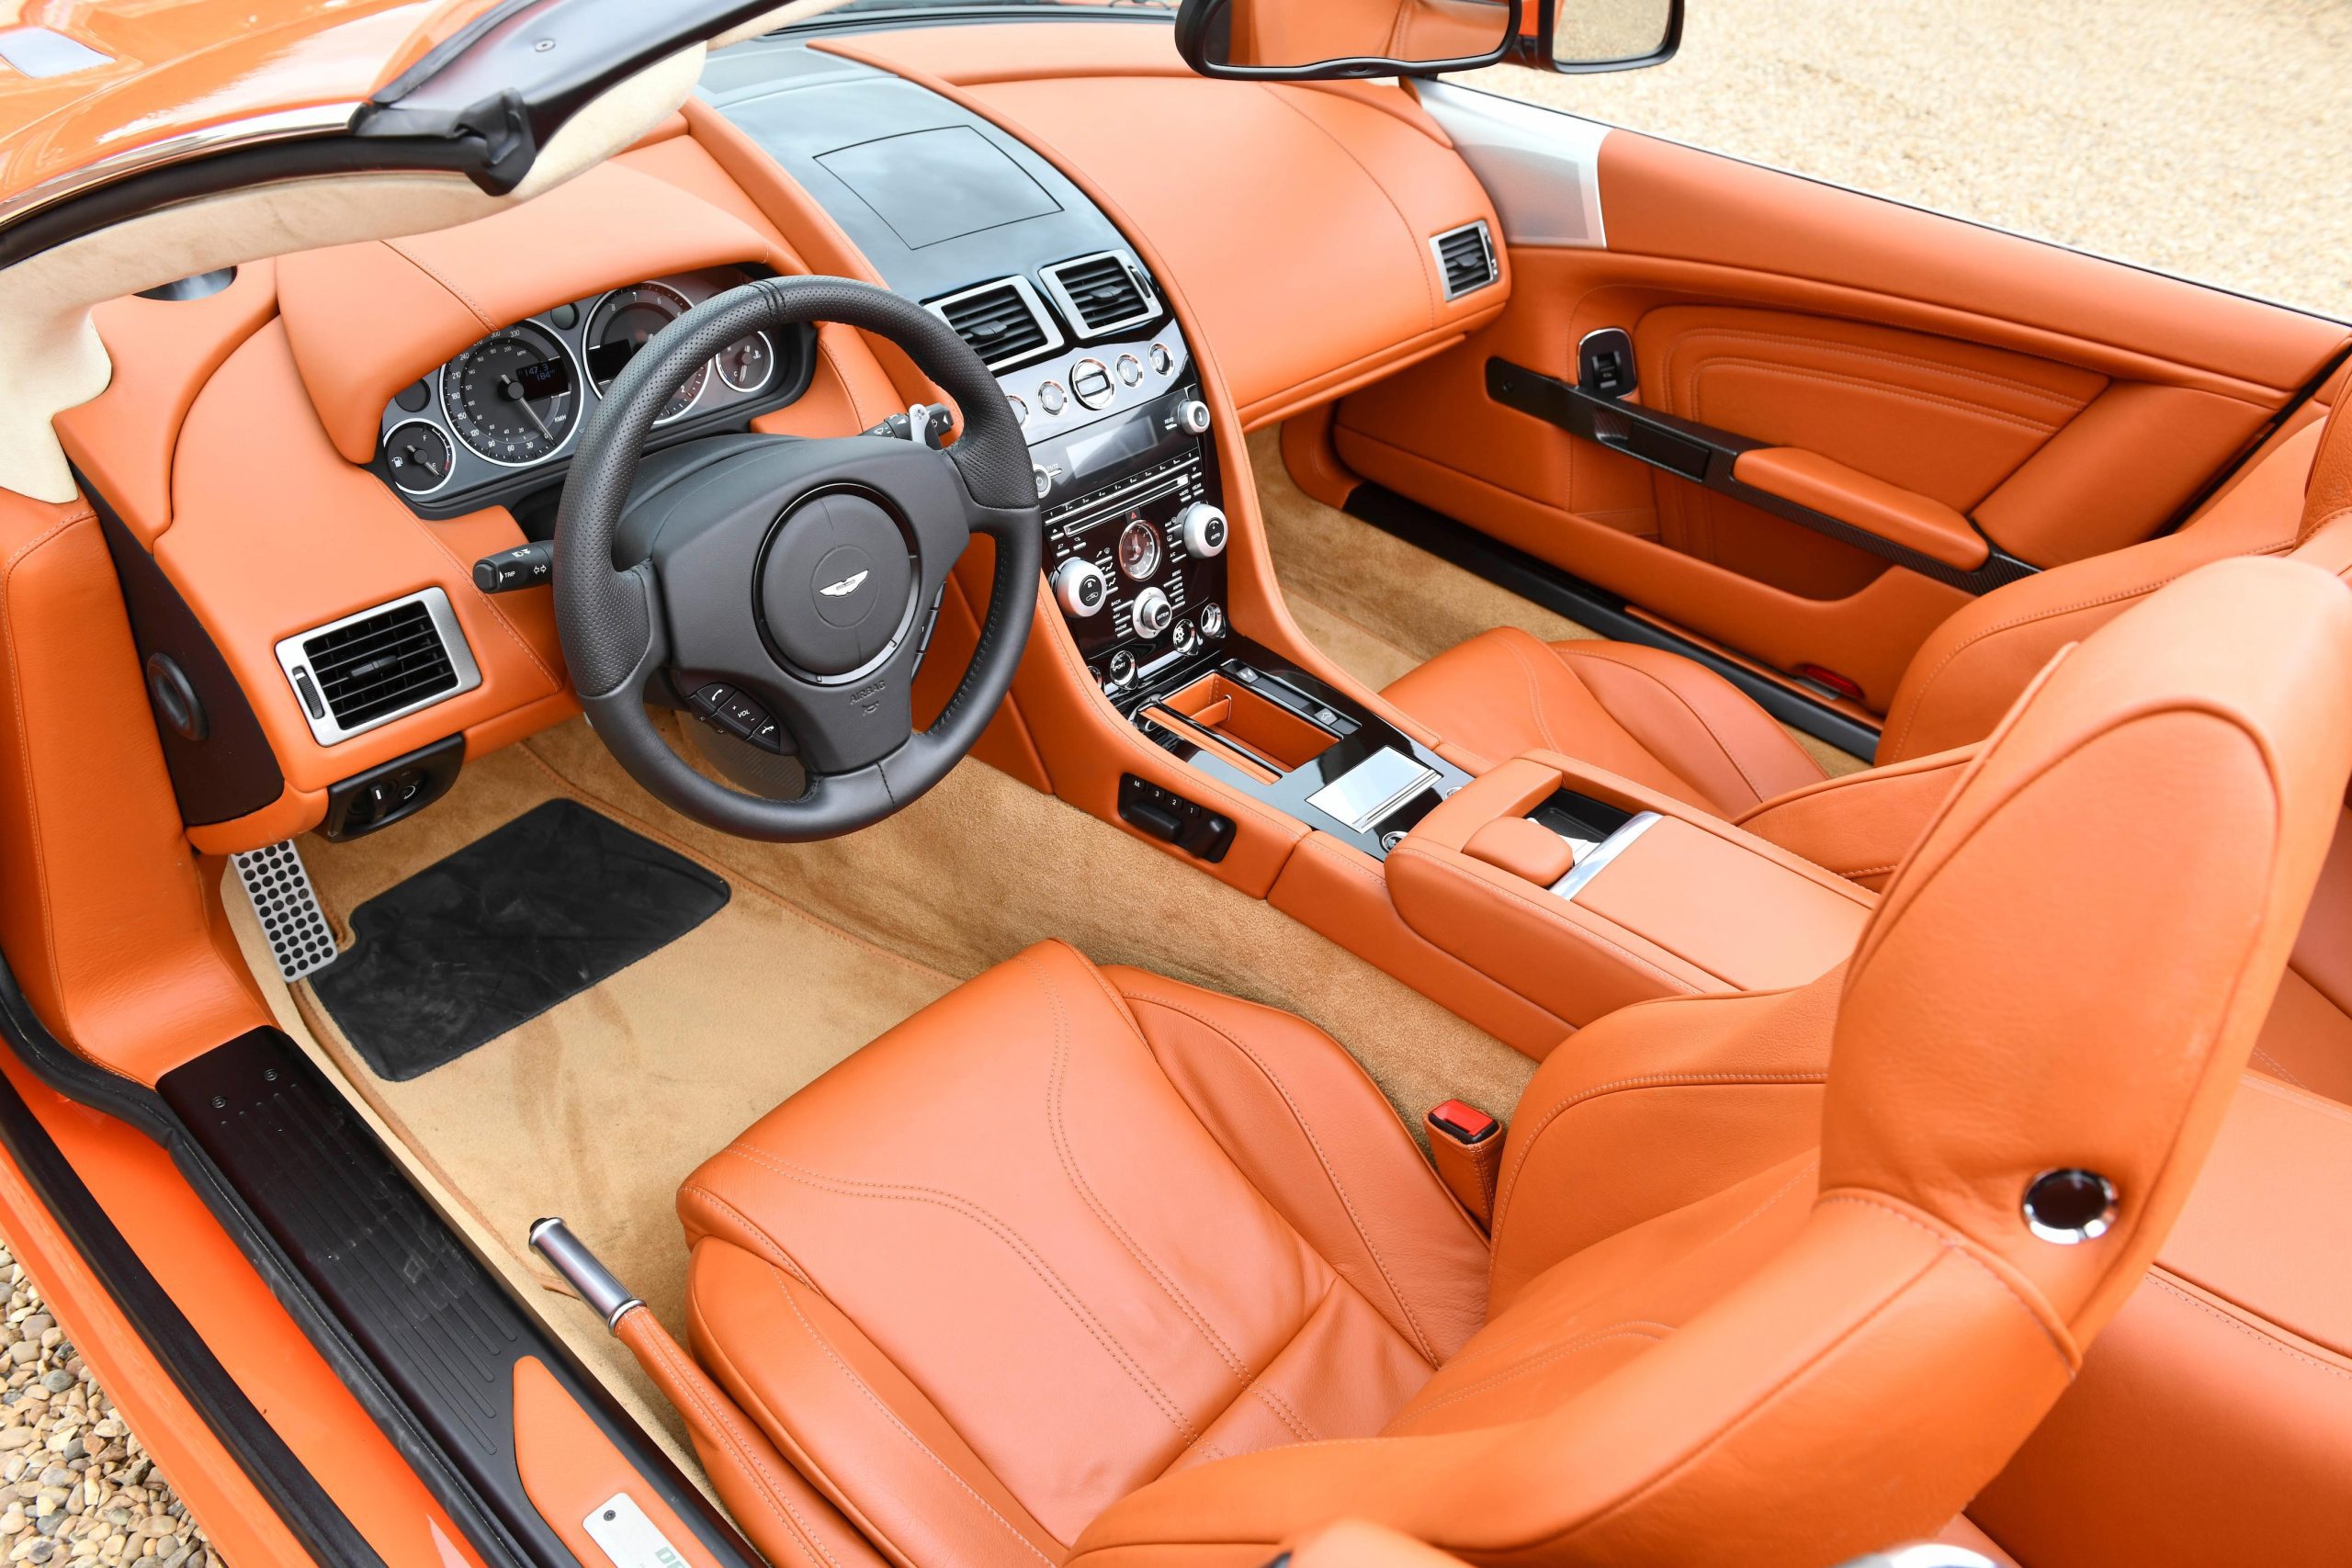 Interior of an Aston Martin DBS Volante